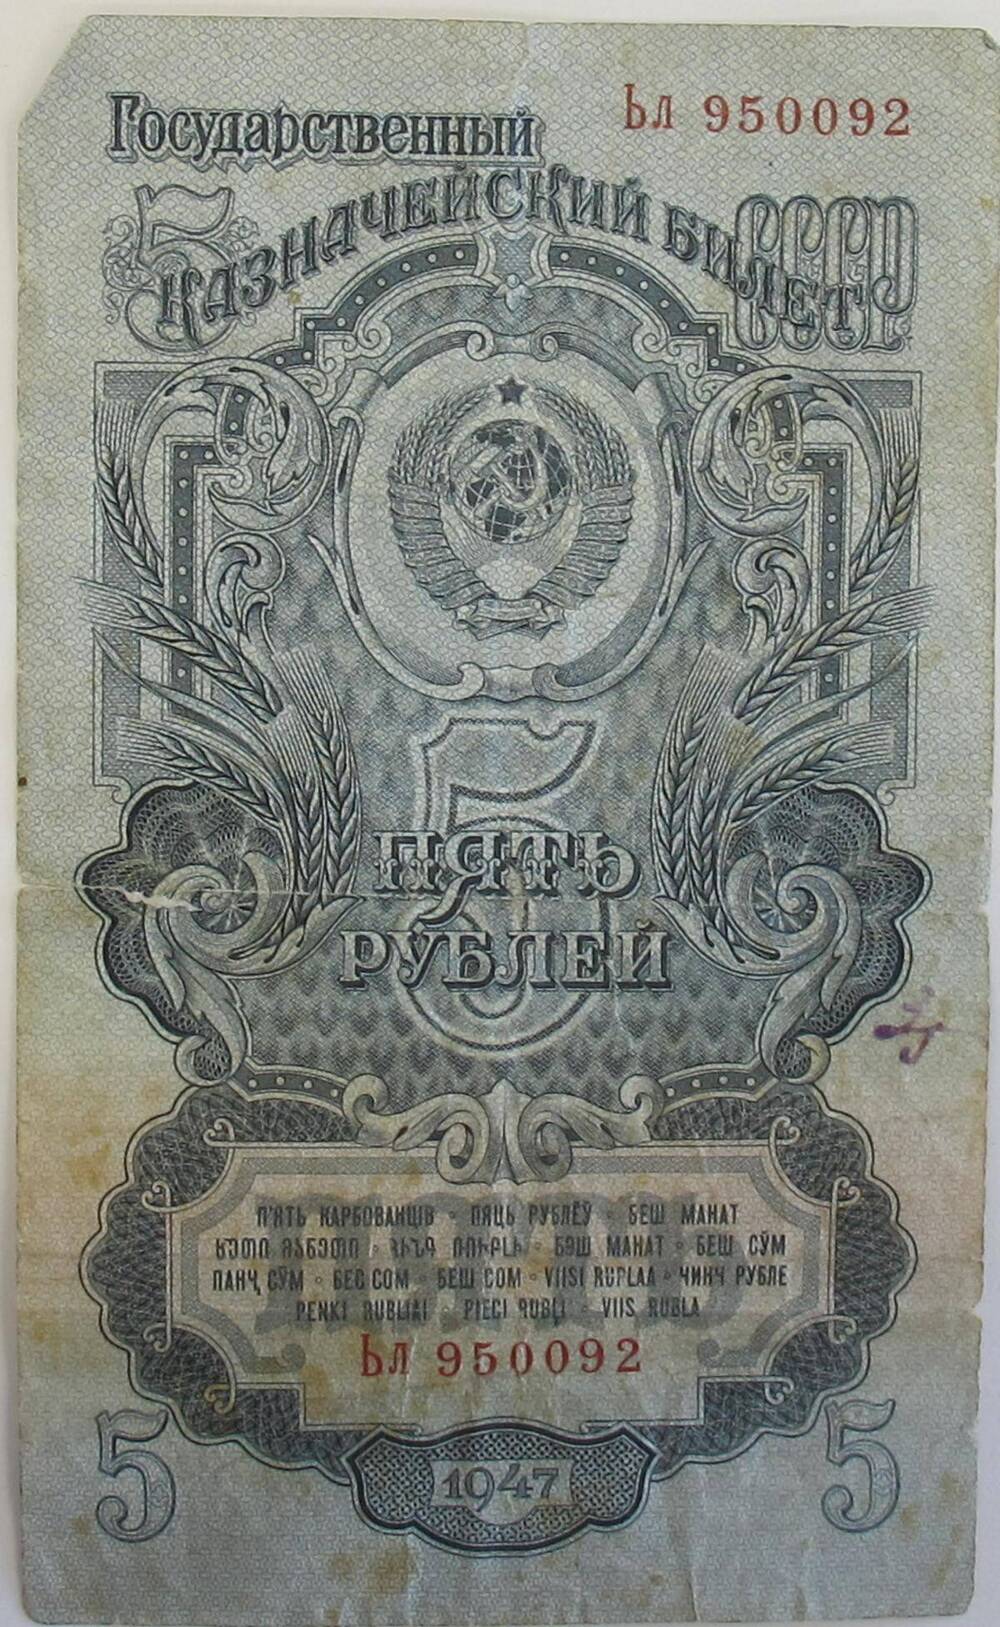 Государственный казначейский билет СССР пять рублей Бл 950092.